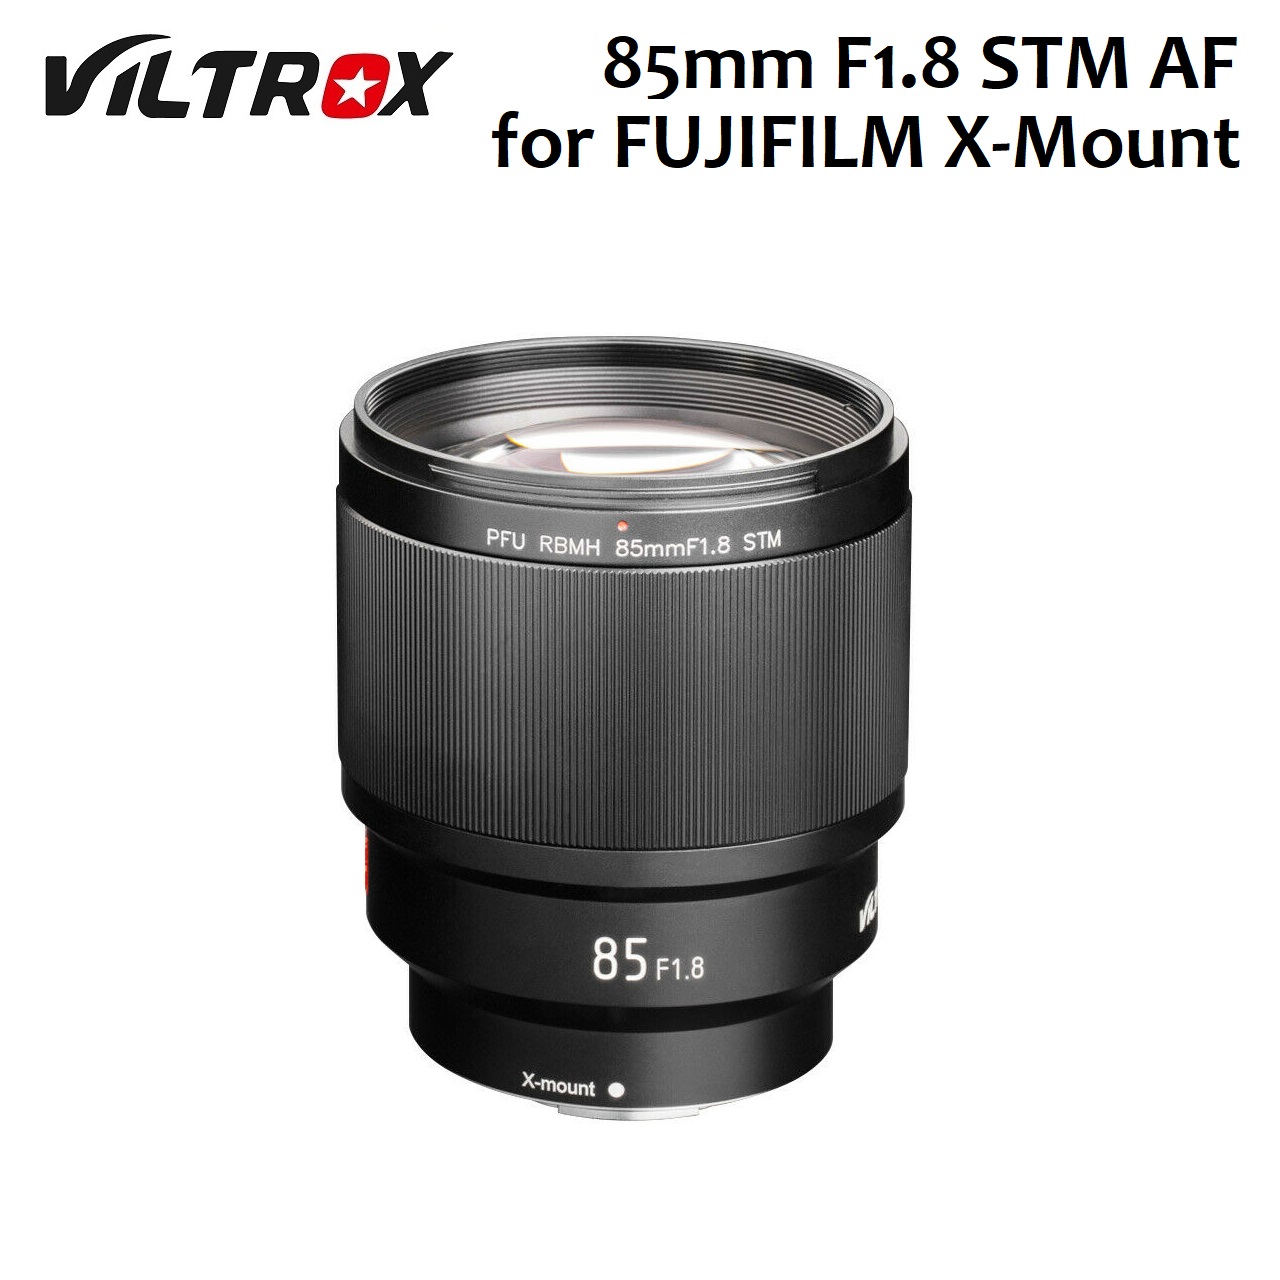 VILTROX Lensa 85mm F1.8 STM AF Lens for Fujifilm FX Mount X Mount